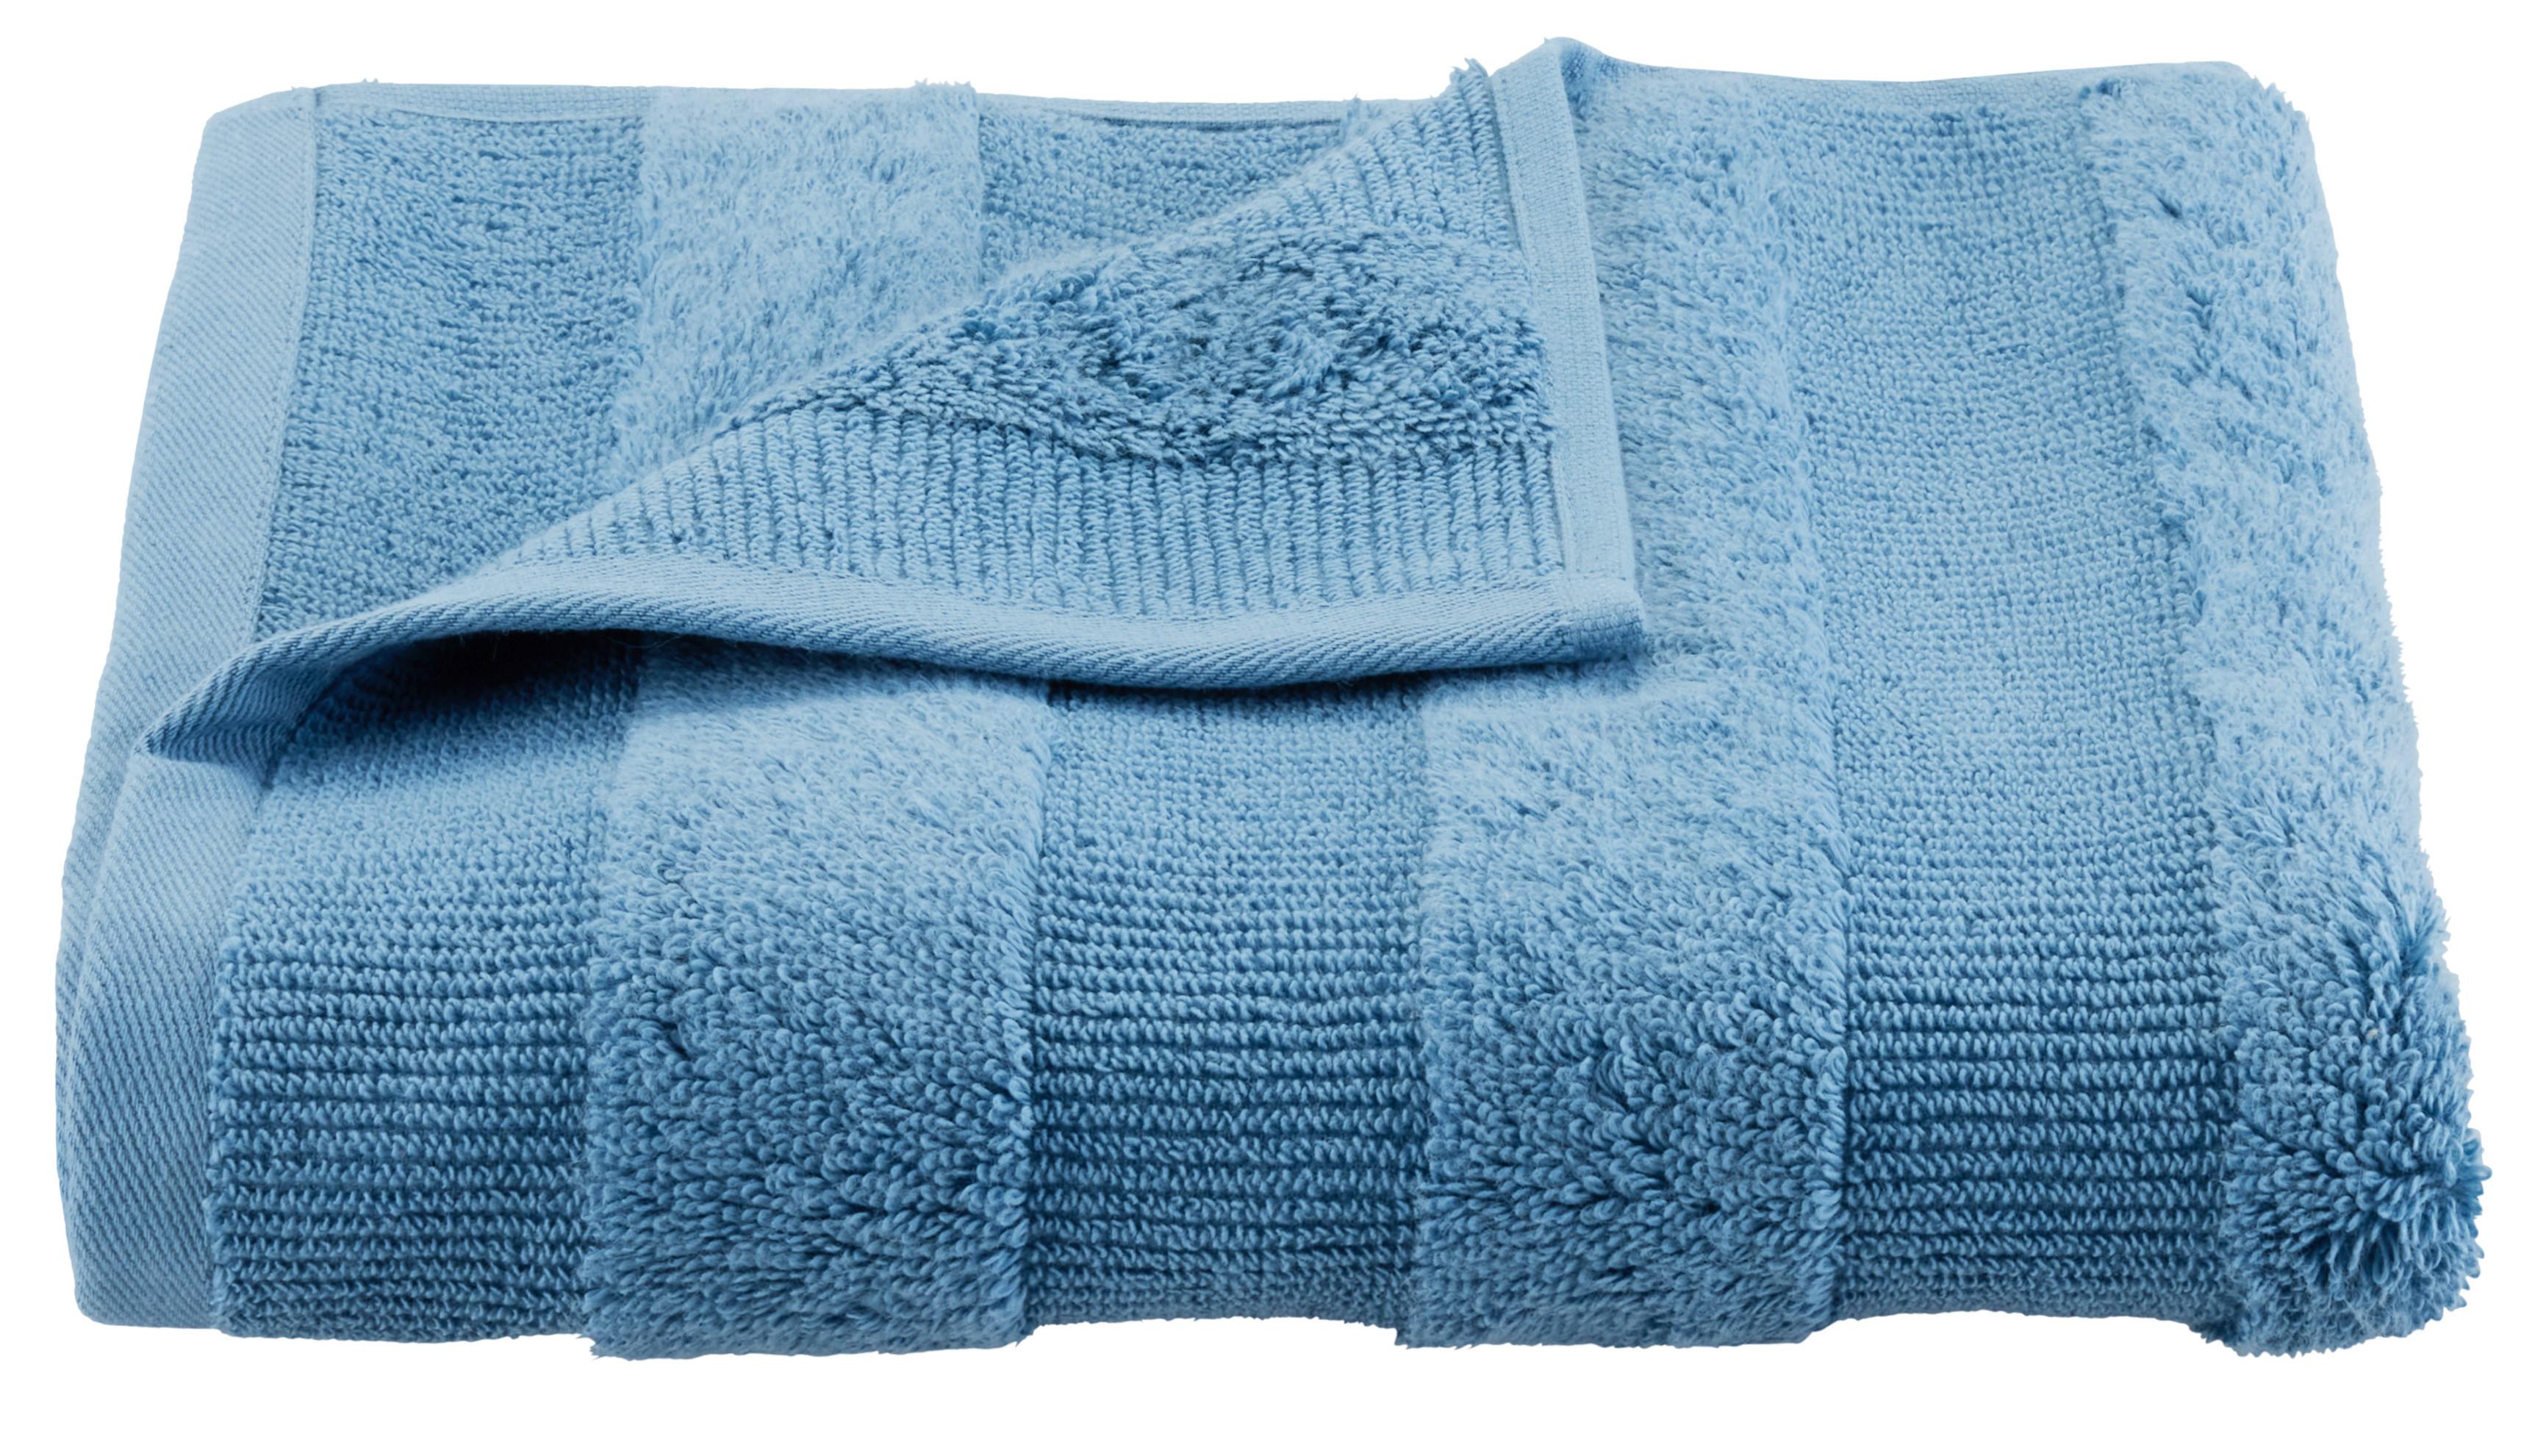 Handtuch Chris in Blau ca. 50x100cm - Blau, Textil (50/100cm) - Premium Living